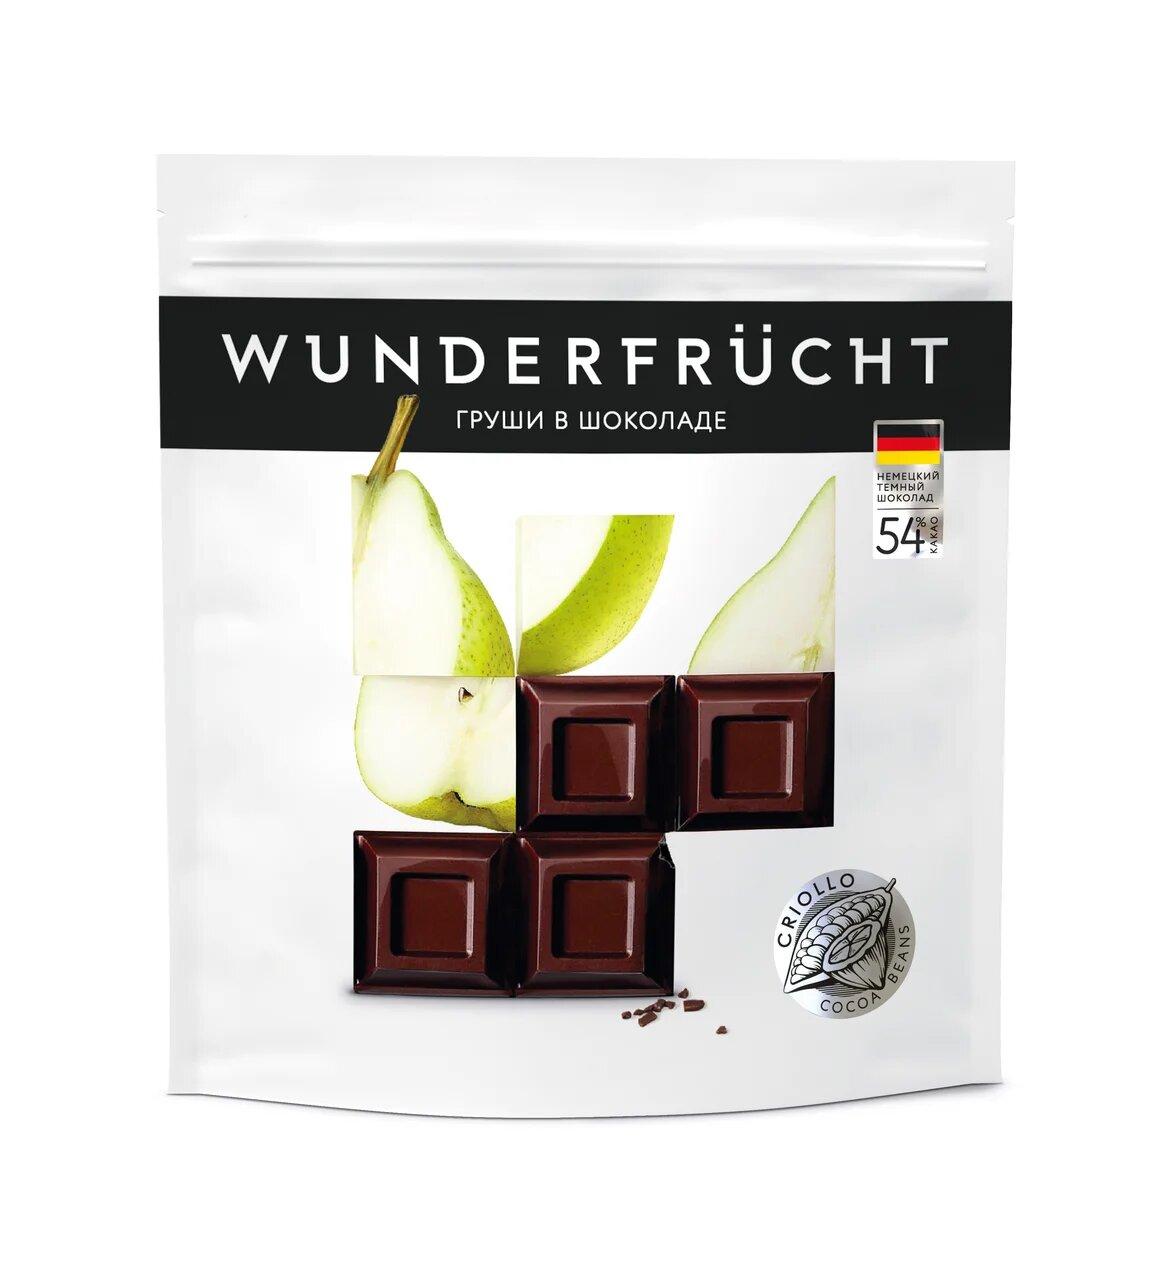 Конфеты Wunderfrucht Груша в темном шоколаде 54% 180 гр., дой-пак